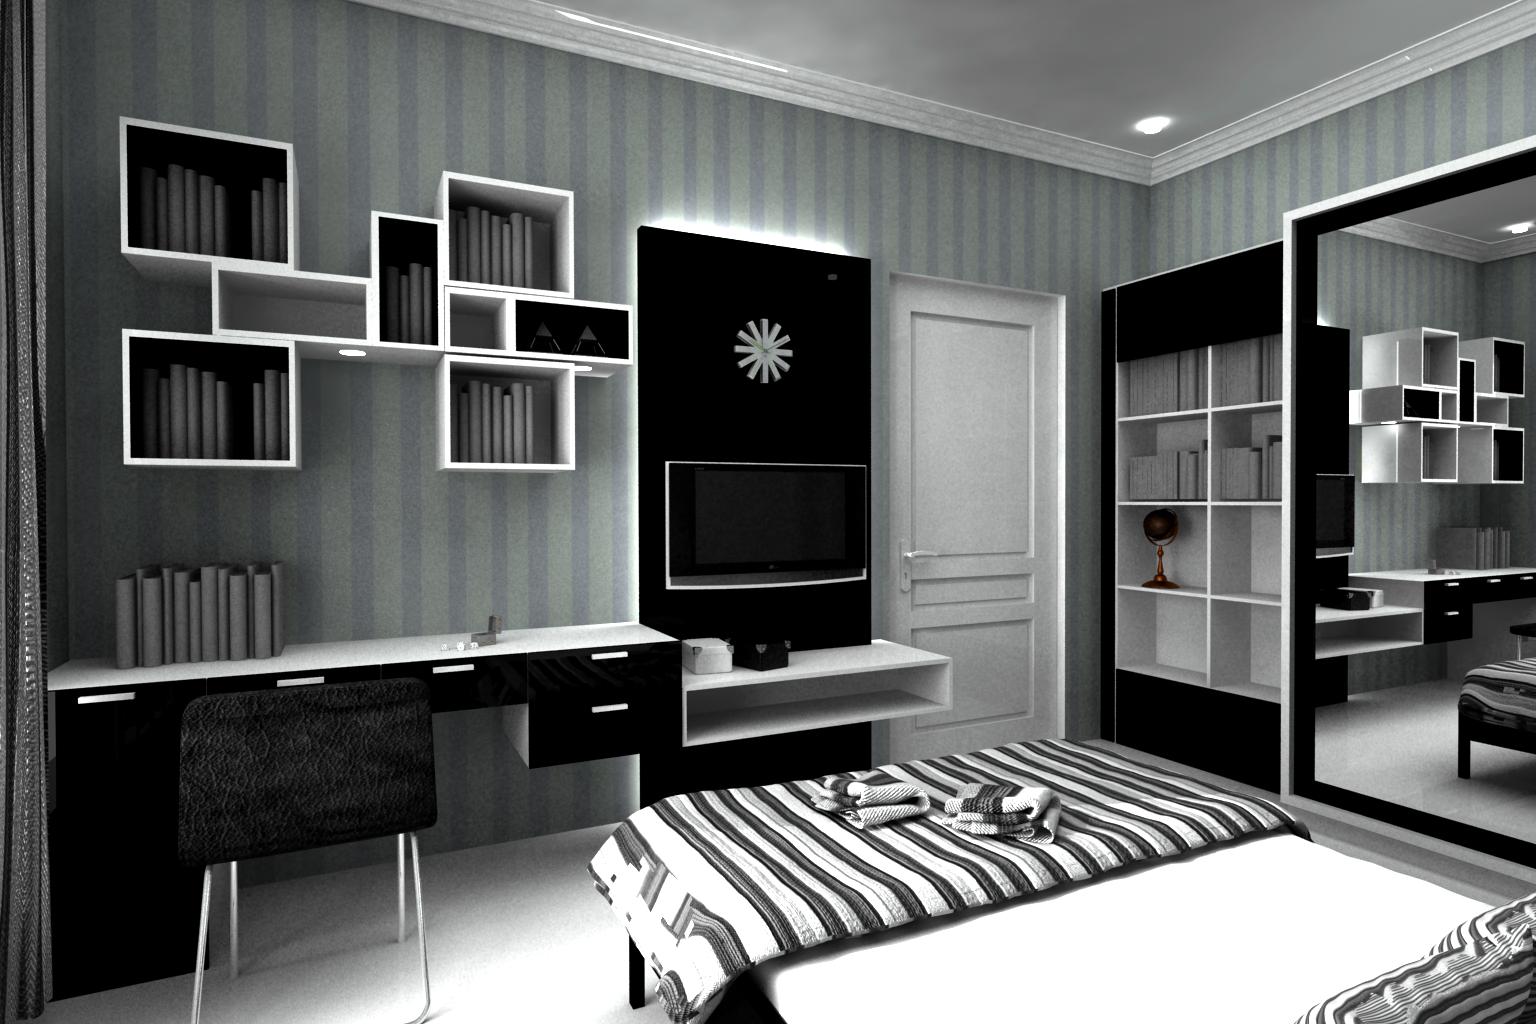 배경 dinding 카마르 hitam putih,가구,방,검정색과 흰색,검정,침실